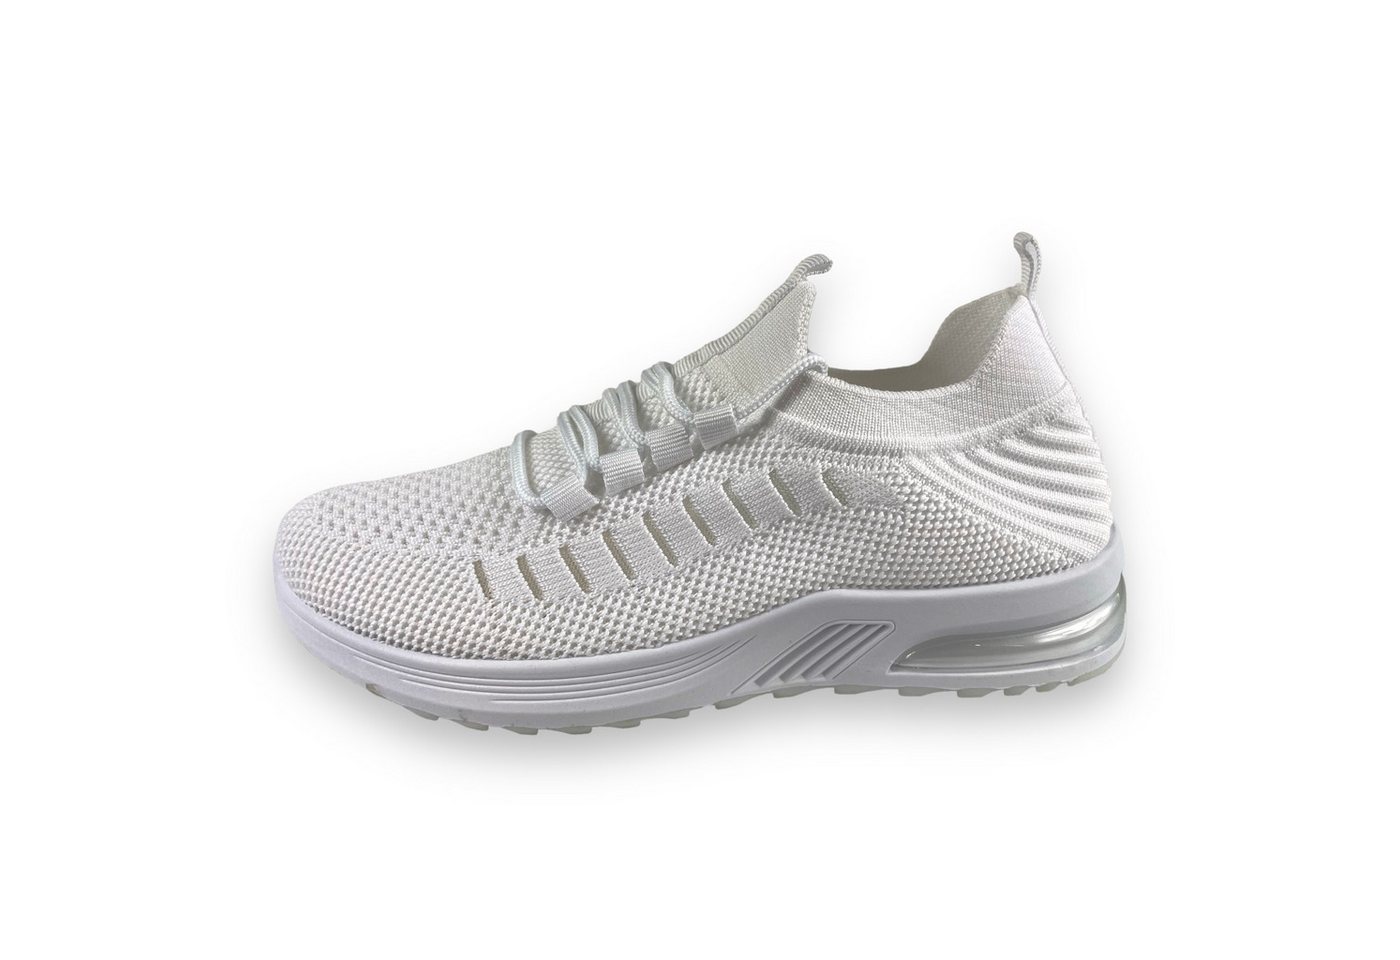 Taschen4life Damen Schuhe 7118 Slip-On Sneaker leicht, atmungsaktiv, bequem, Stoffschuhe von Taschen4life